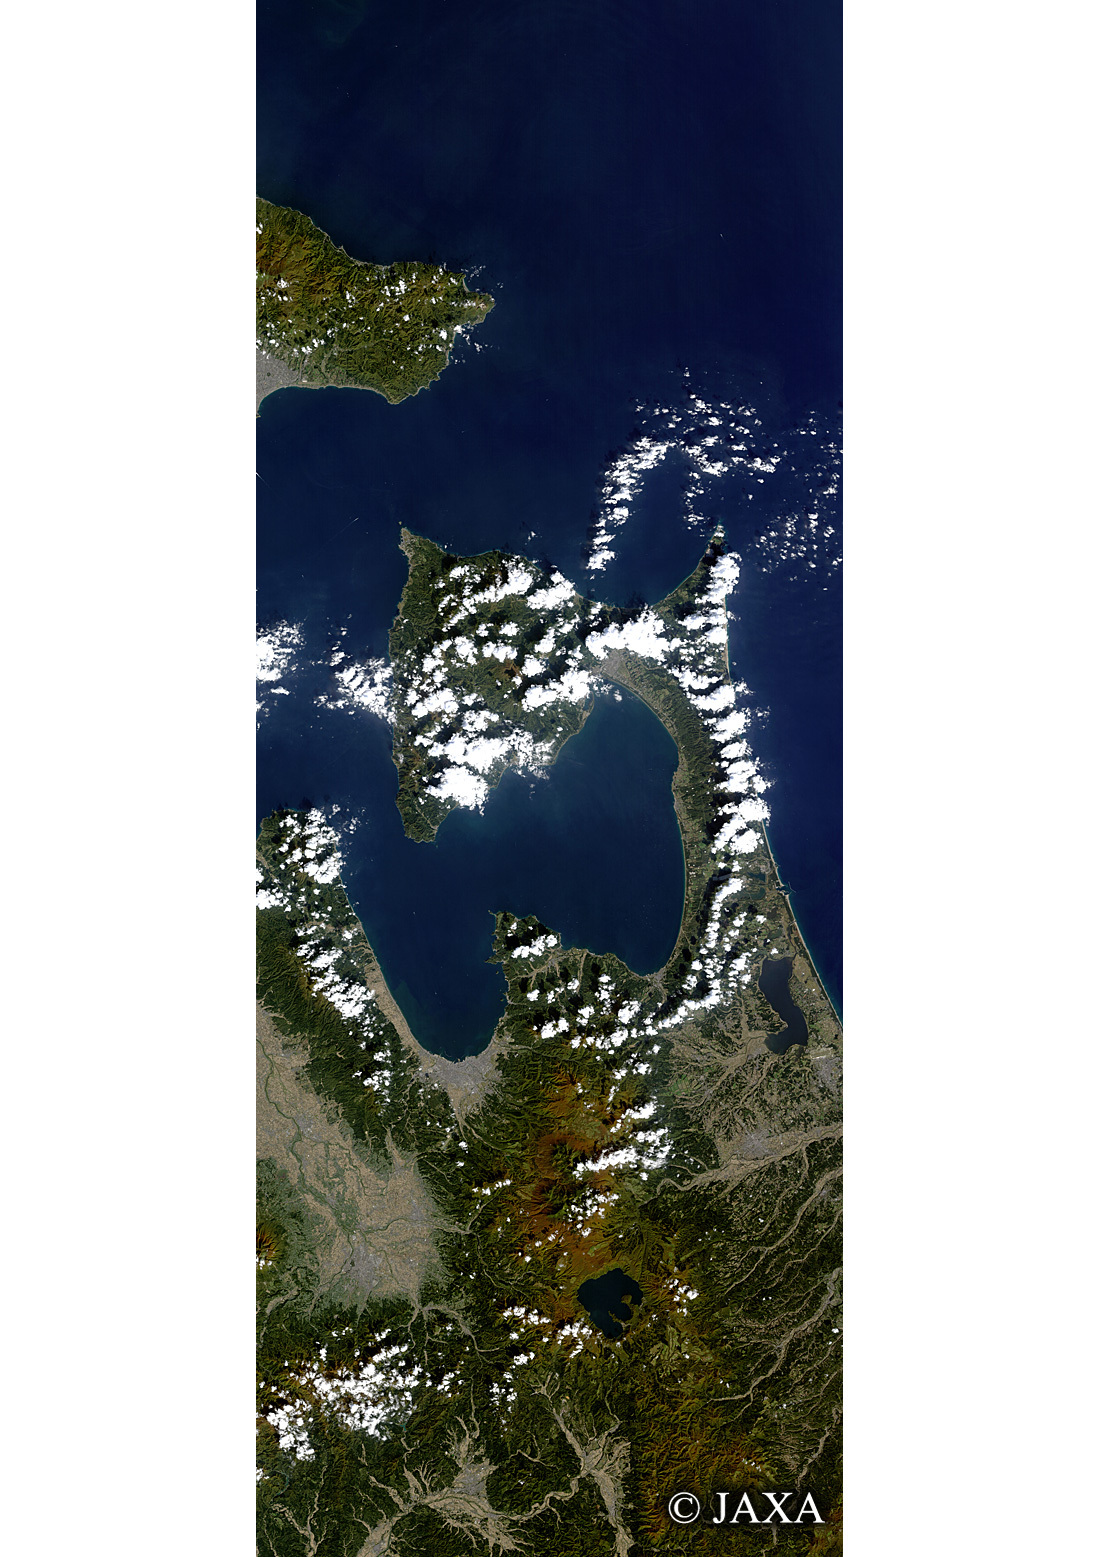 だいちから見た日本の都市 津軽海峡の秋:衛星画像